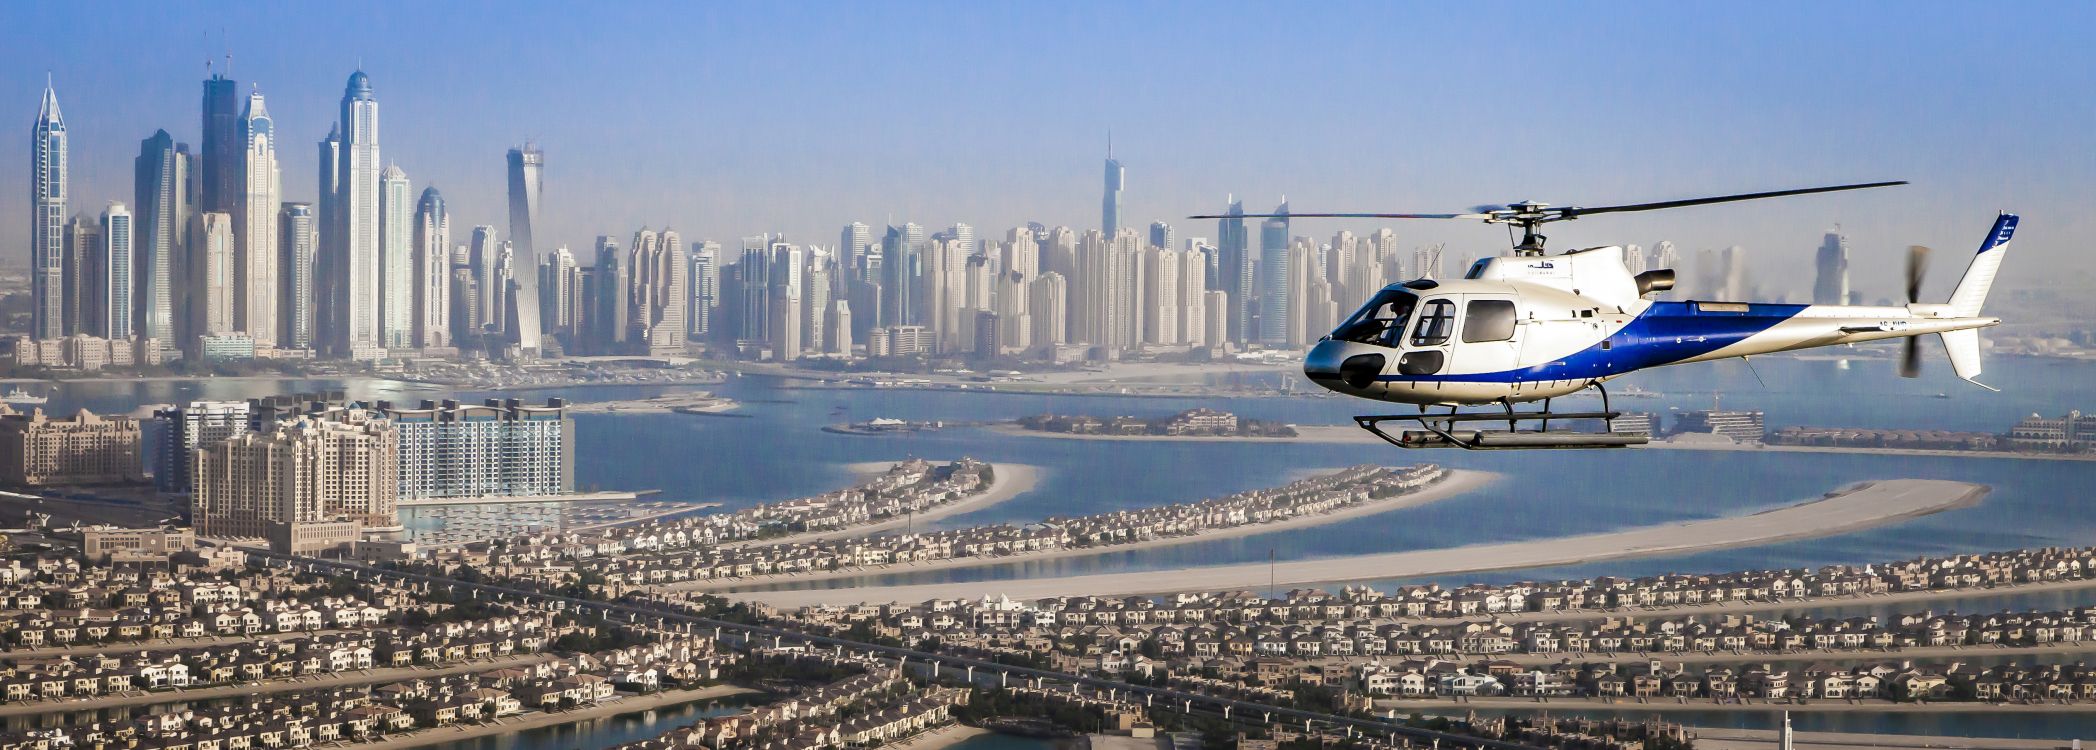 Helicóptero Blanco y Azul Sobrevolando Los Edificios de la Ciudad Durante el Día. Wallpaper in 5060x1810 Resolution